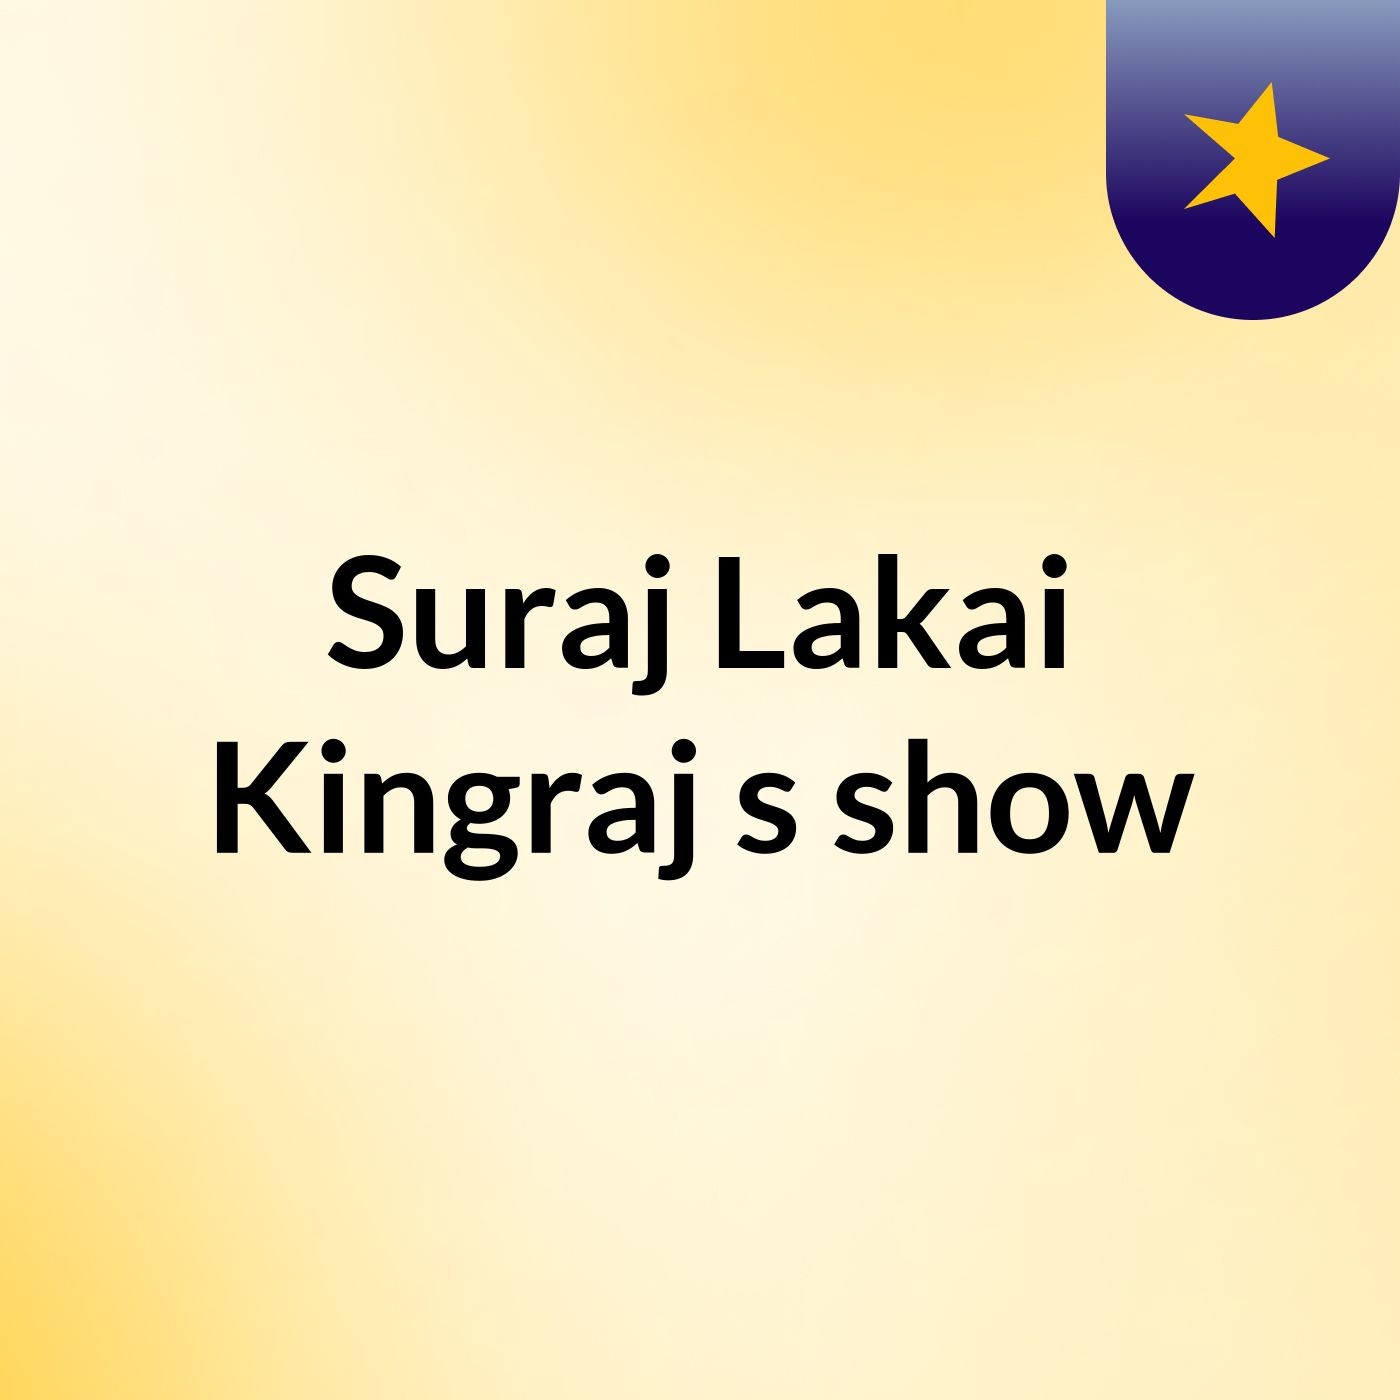 Suraj Lakai Kingraj's show